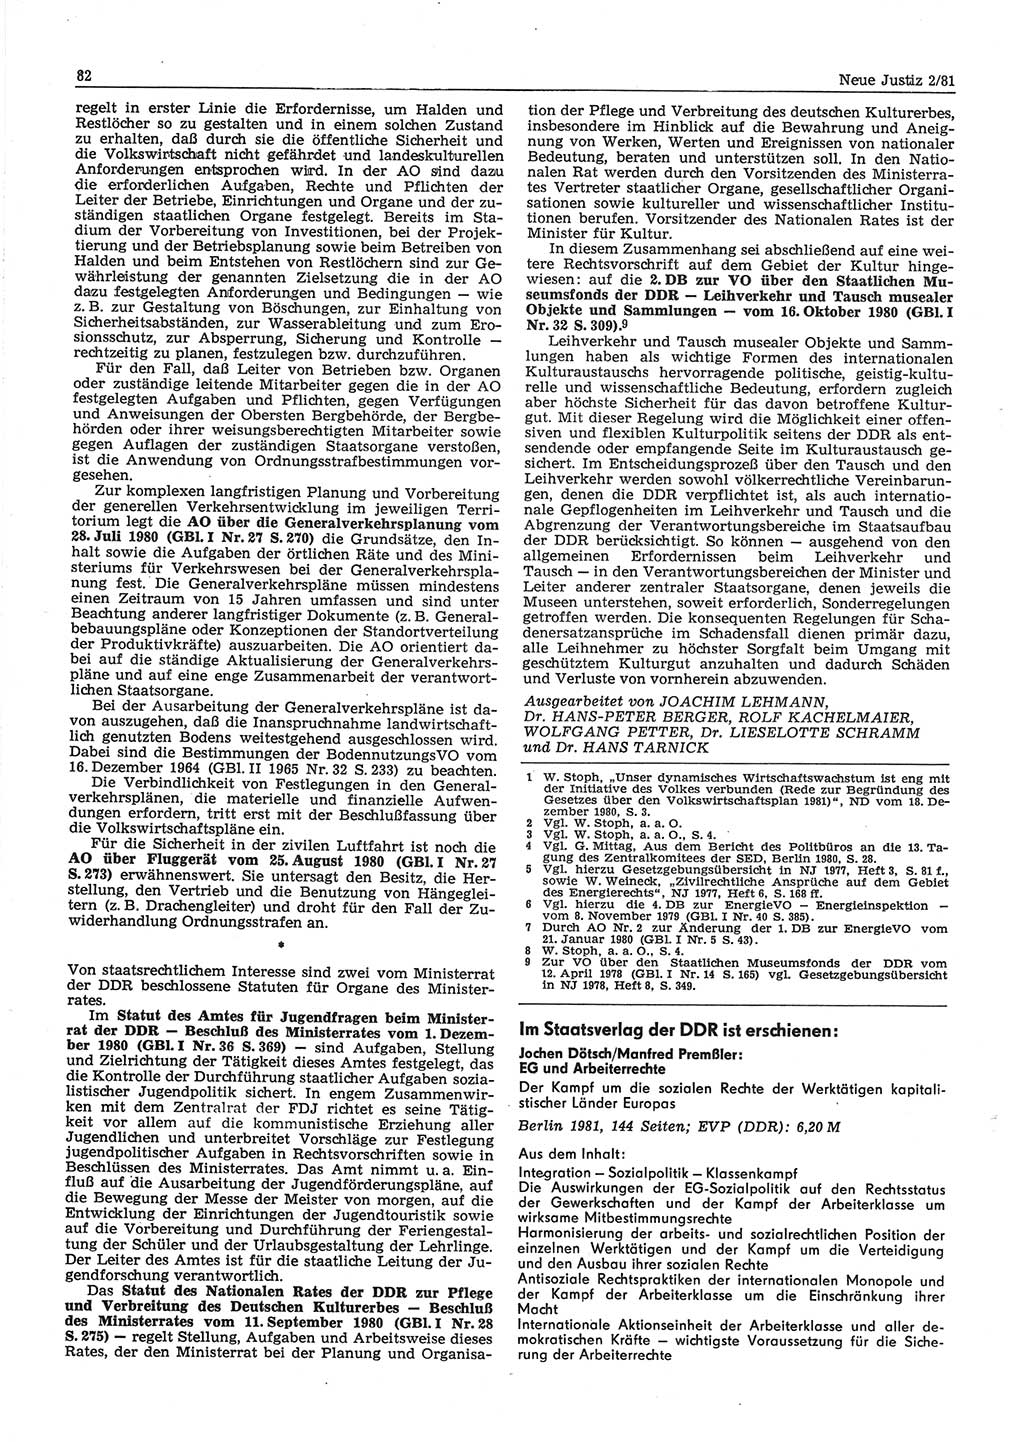 Neue Justiz (NJ), Zeitschrift für sozialistisches Recht und Gesetzlichkeit [Deutsche Demokratische Republik (DDR)], 35. Jahrgang 1981, Seite 82 (NJ DDR 1981, S. 82)